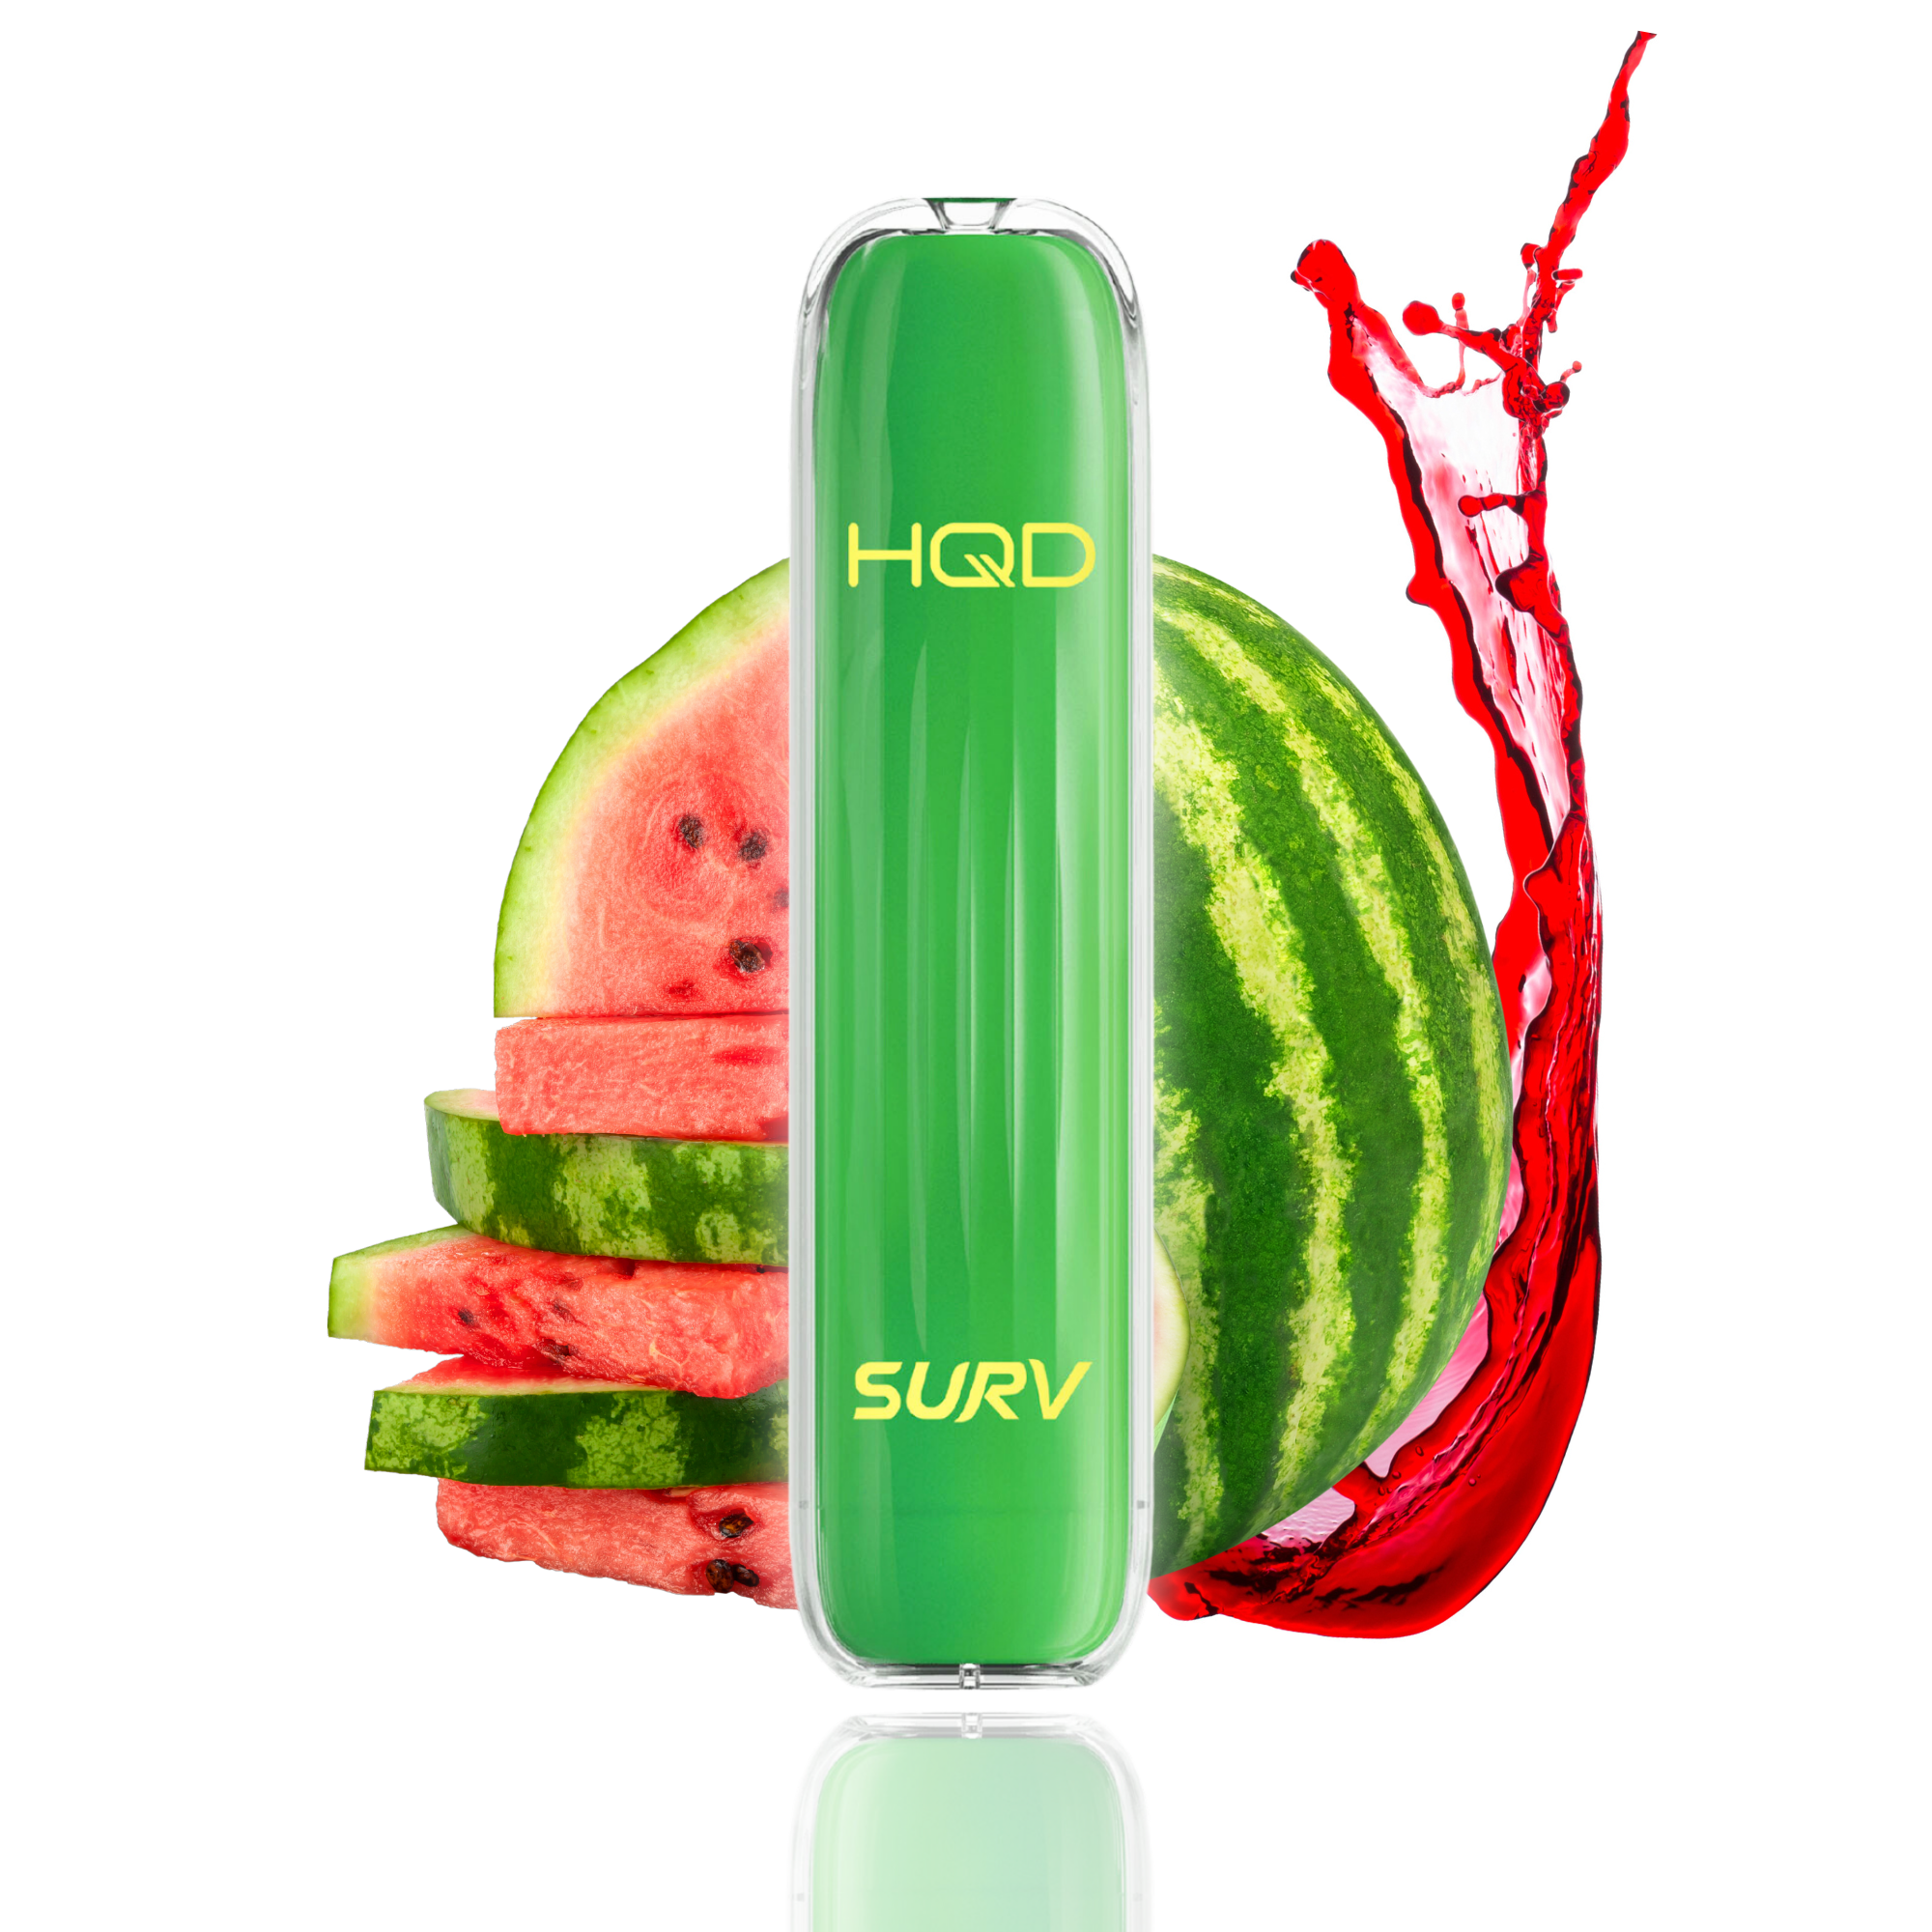 HQD Surv Watermelon 18mg/ml